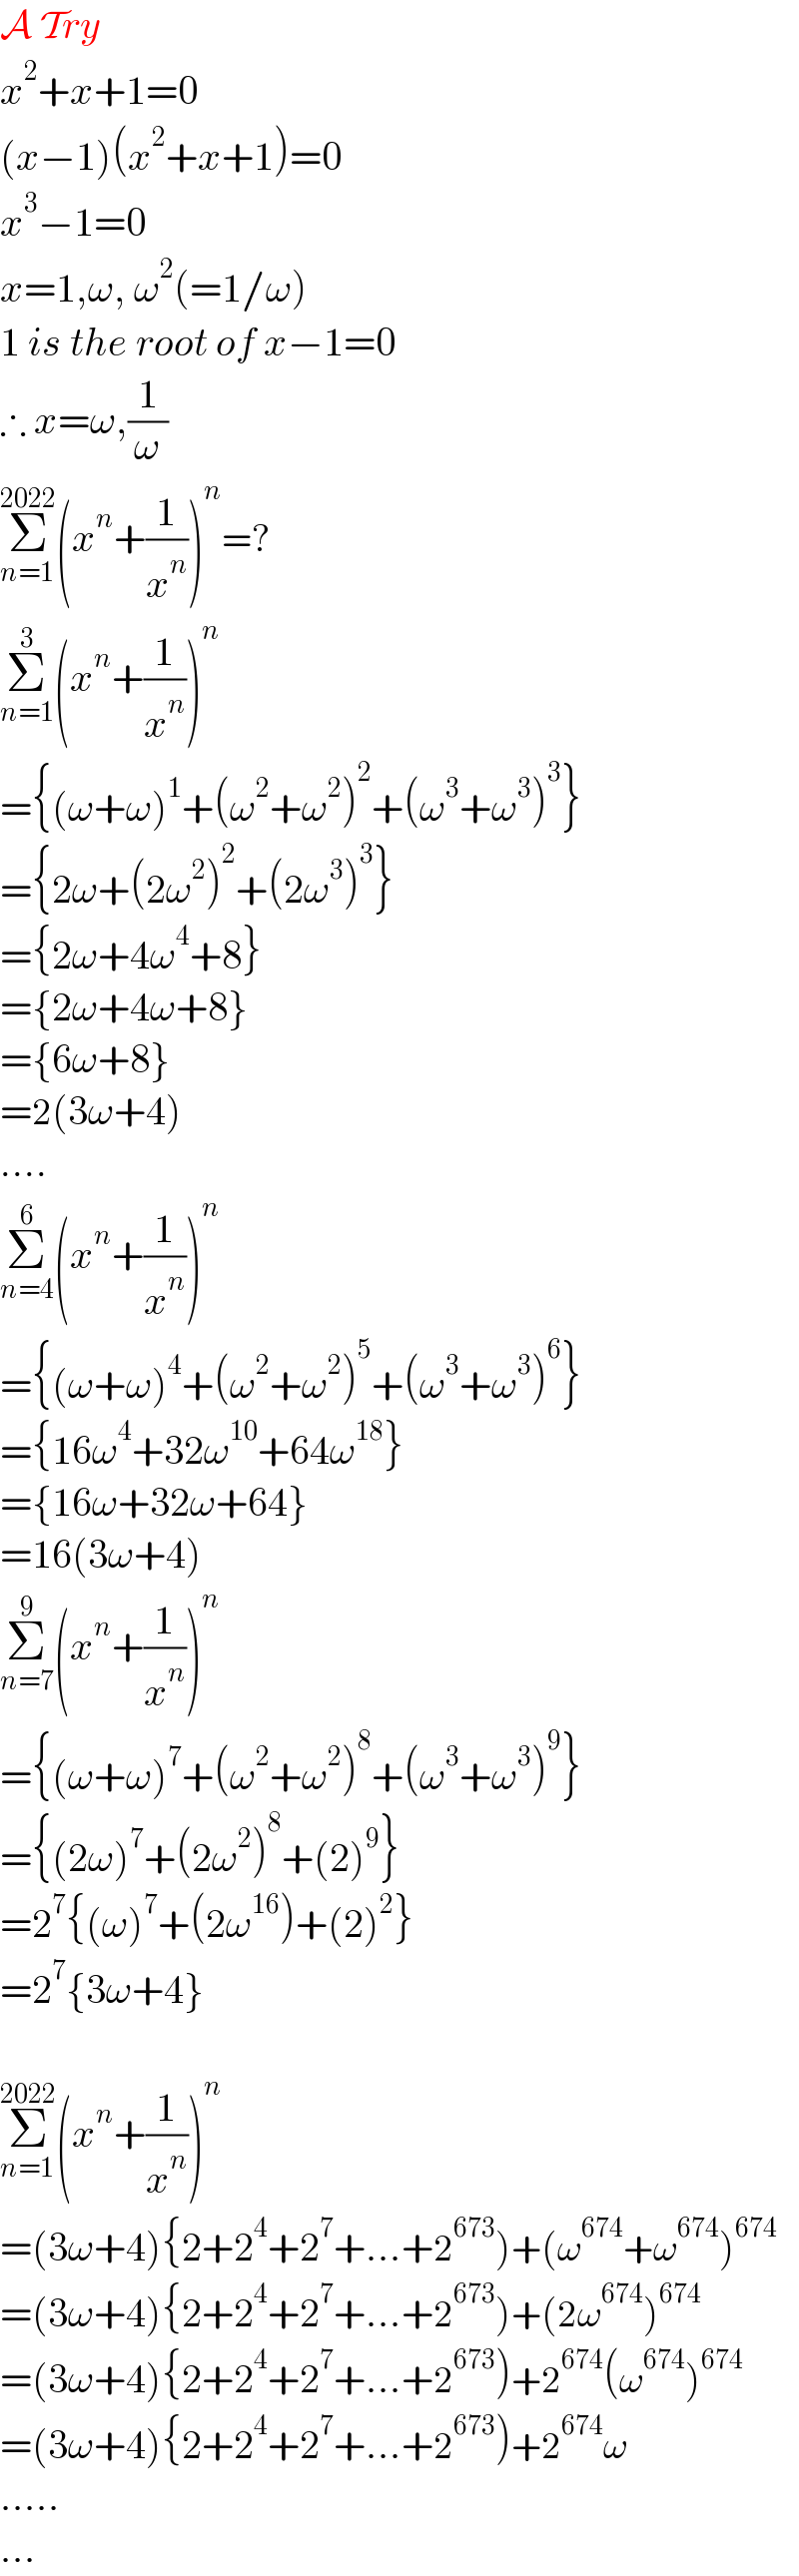 A Try  x^2 +x+1=0  (x−1)(x^2 +x+1)=0  x^3 −1=0  x=1,ω, ω^2 (=1/ω)  1 is the root of x−1=0  ∴ x=ω,(1/ω)  Σ_(n=1) ^(2022) (x^n +(1/x^n ))^n =?  Σ_(n=1) ^3 (x^n +(1/x^n ))^n   ={(ω+ω)^1 +(ω^2 +ω^2 )^2 +(ω^3 +ω^3 )^3 }  ={2ω+(2ω^2 )^2 +(2ω^3 )^3 }  ={2ω+4ω^4 +8}  ={2ω+4ω+8}  ={6ω+8}  =2(3ω+4)  ....  Σ_(n=4) ^6 (x^n +(1/x^n ))^n   ={(ω+ω)^4 +(ω^2 +ω^2 )^5 +(ω^3 +ω^3 )^6 }  ={16ω^4 +32ω^(10) +64ω^(18) }  ={16ω+32ω+64}  =16(3ω+4)  Σ_(n=7) ^9 (x^n +(1/x^n ))^n   ={(ω+ω)^7 +(ω^2 +ω^2 )^8 +(ω^3 +ω^3 )^9 }  ={(2ω)^7 +(2ω^2 )^8 +(2)^9 }  =2^7 {(ω)^7 +(2ω^(16) )+(2)^2 }  =2^7 {3ω+4}    Σ_(n=1) ^(2022) (x^n +(1/x^n ))^n   =(3ω+4){2+2^4 +2^7 +...+2^(673) )+(ω^(674) +ω^(674) )^(674)   =(3ω+4){2+2^4 +2^7 +...+2^(673) )+(2ω^(674) )^(674)   =(3ω+4){2+2^4 +2^7 +...+2^(673) )+2^(674) (ω^(674) )^(674)   =(3ω+4){2+2^4 +2^7 +...+2^(673) )+2^(674) ω  .....  ...  